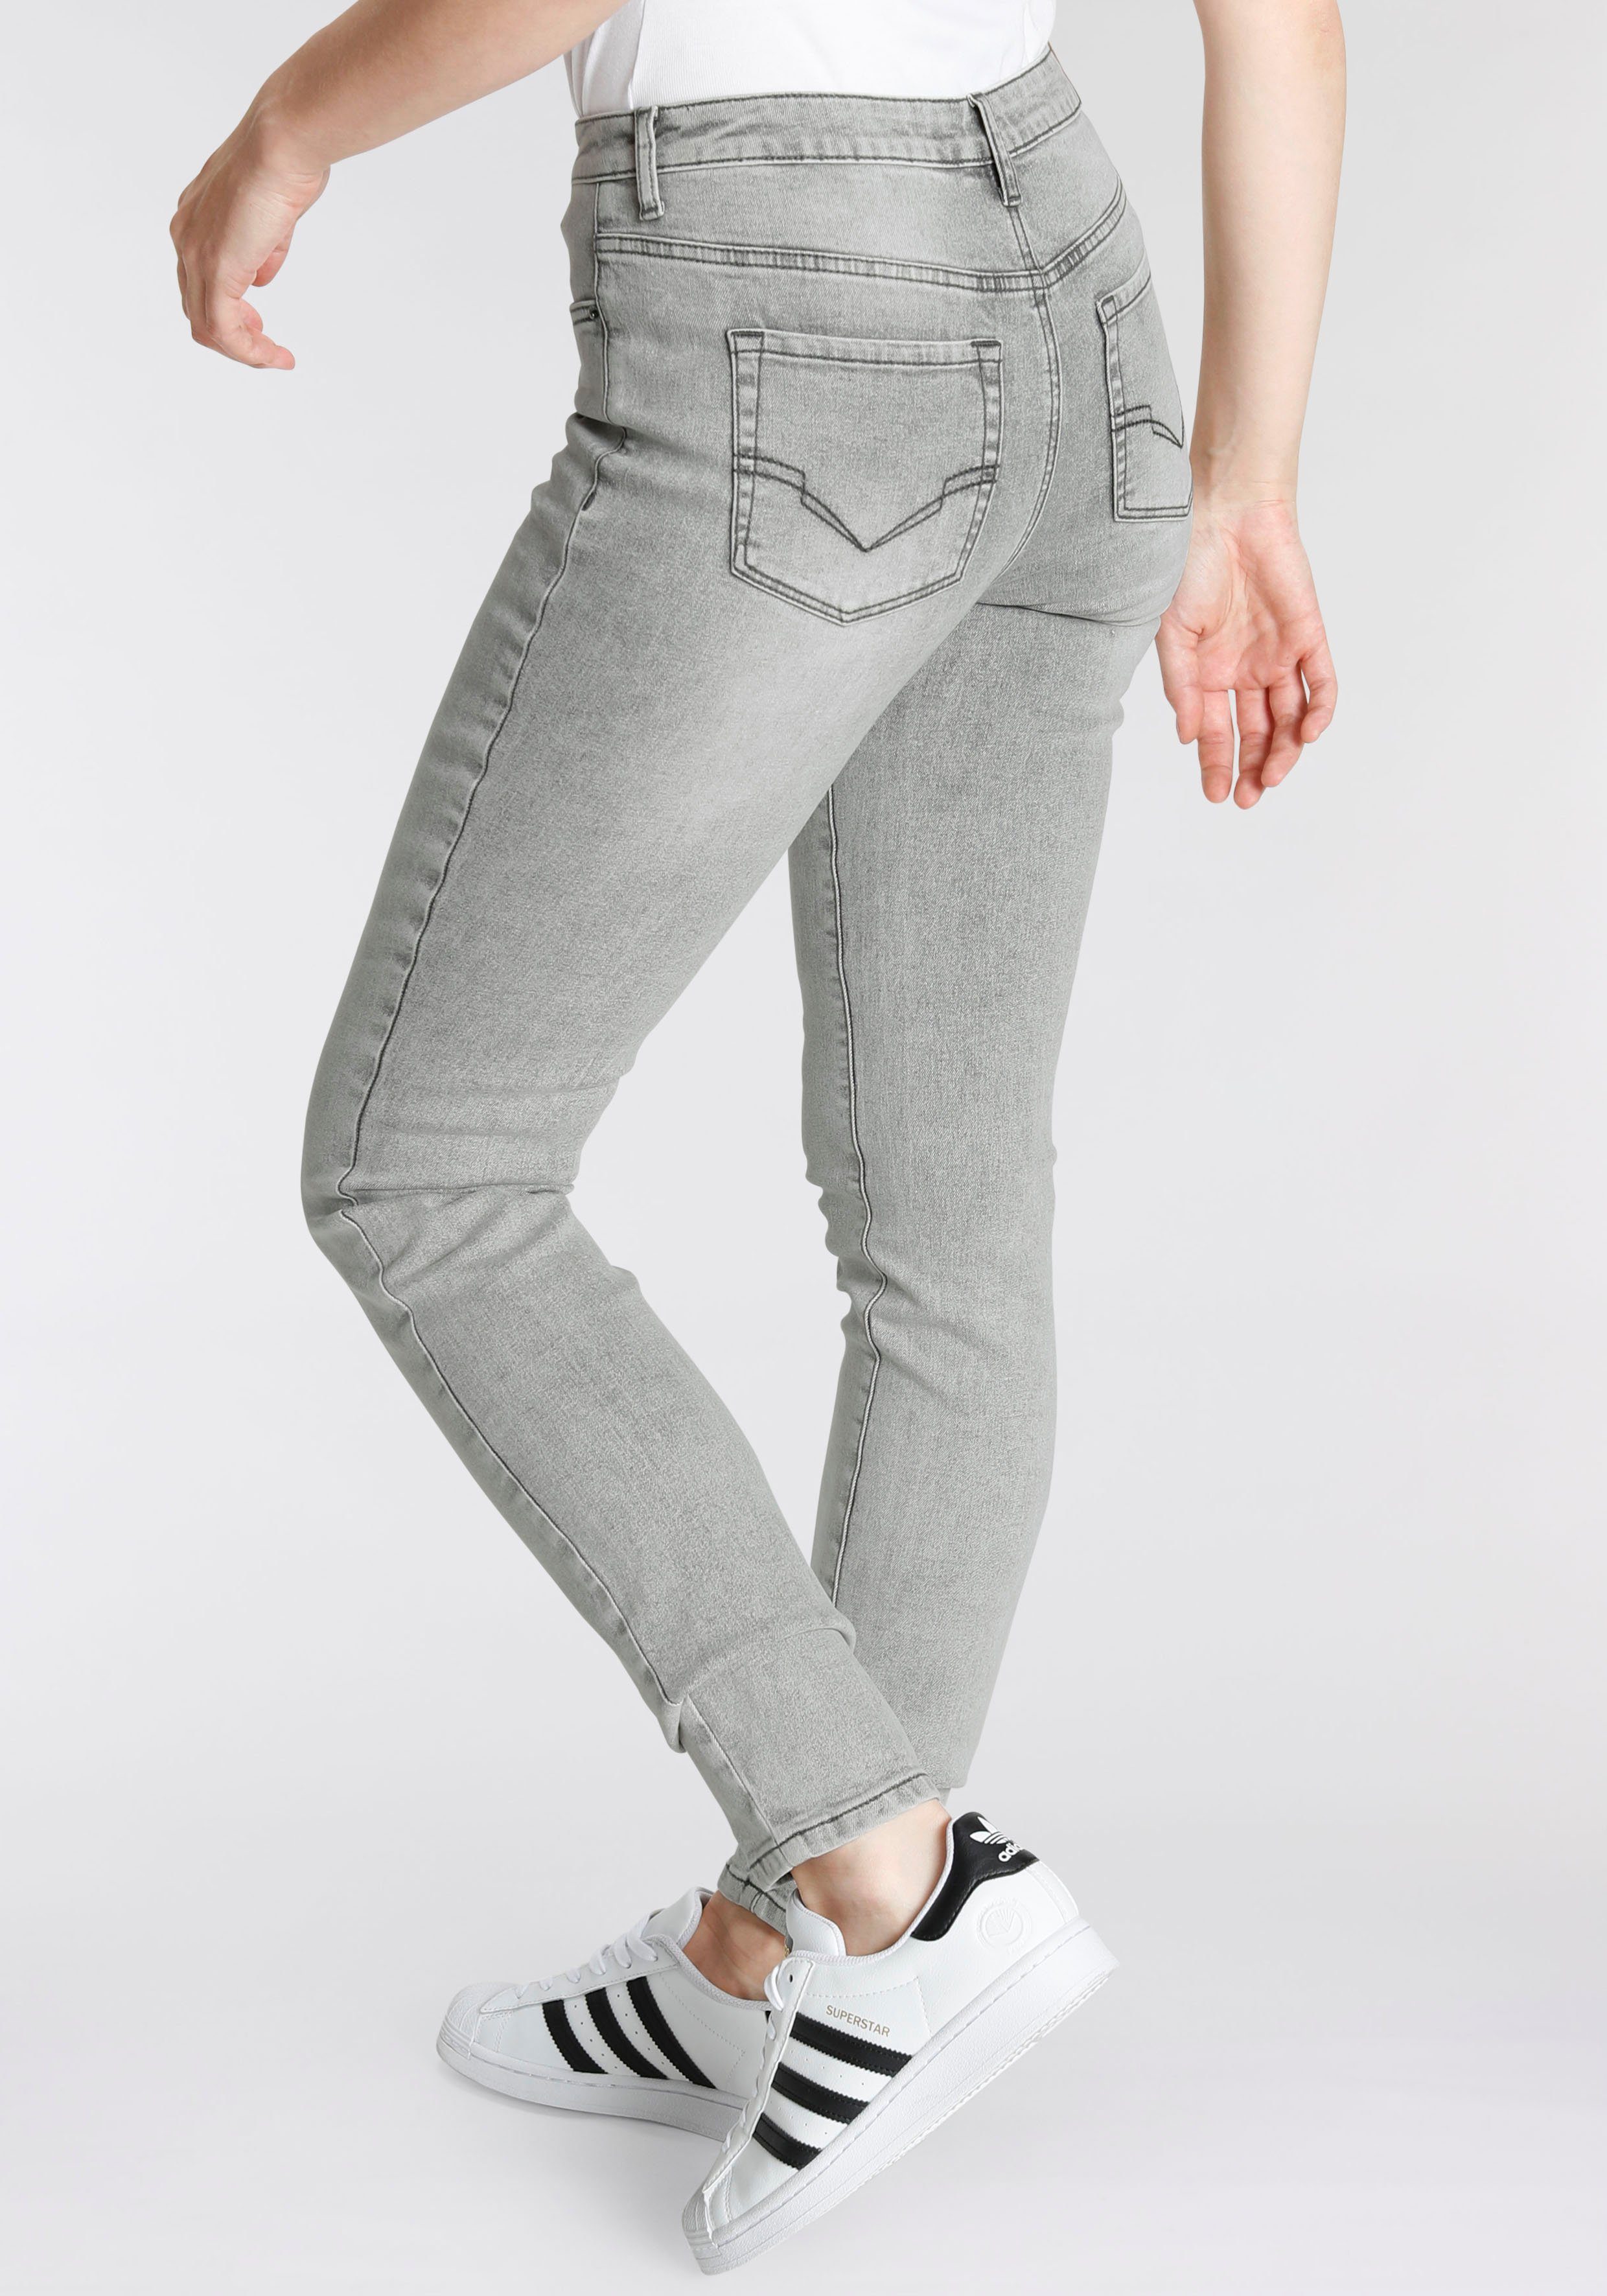 Produktion VINTAGE Ökologische, 5-Pocket-Jeans wassersparende WASH SLIM durch H.I.S OZON RISE HIGH